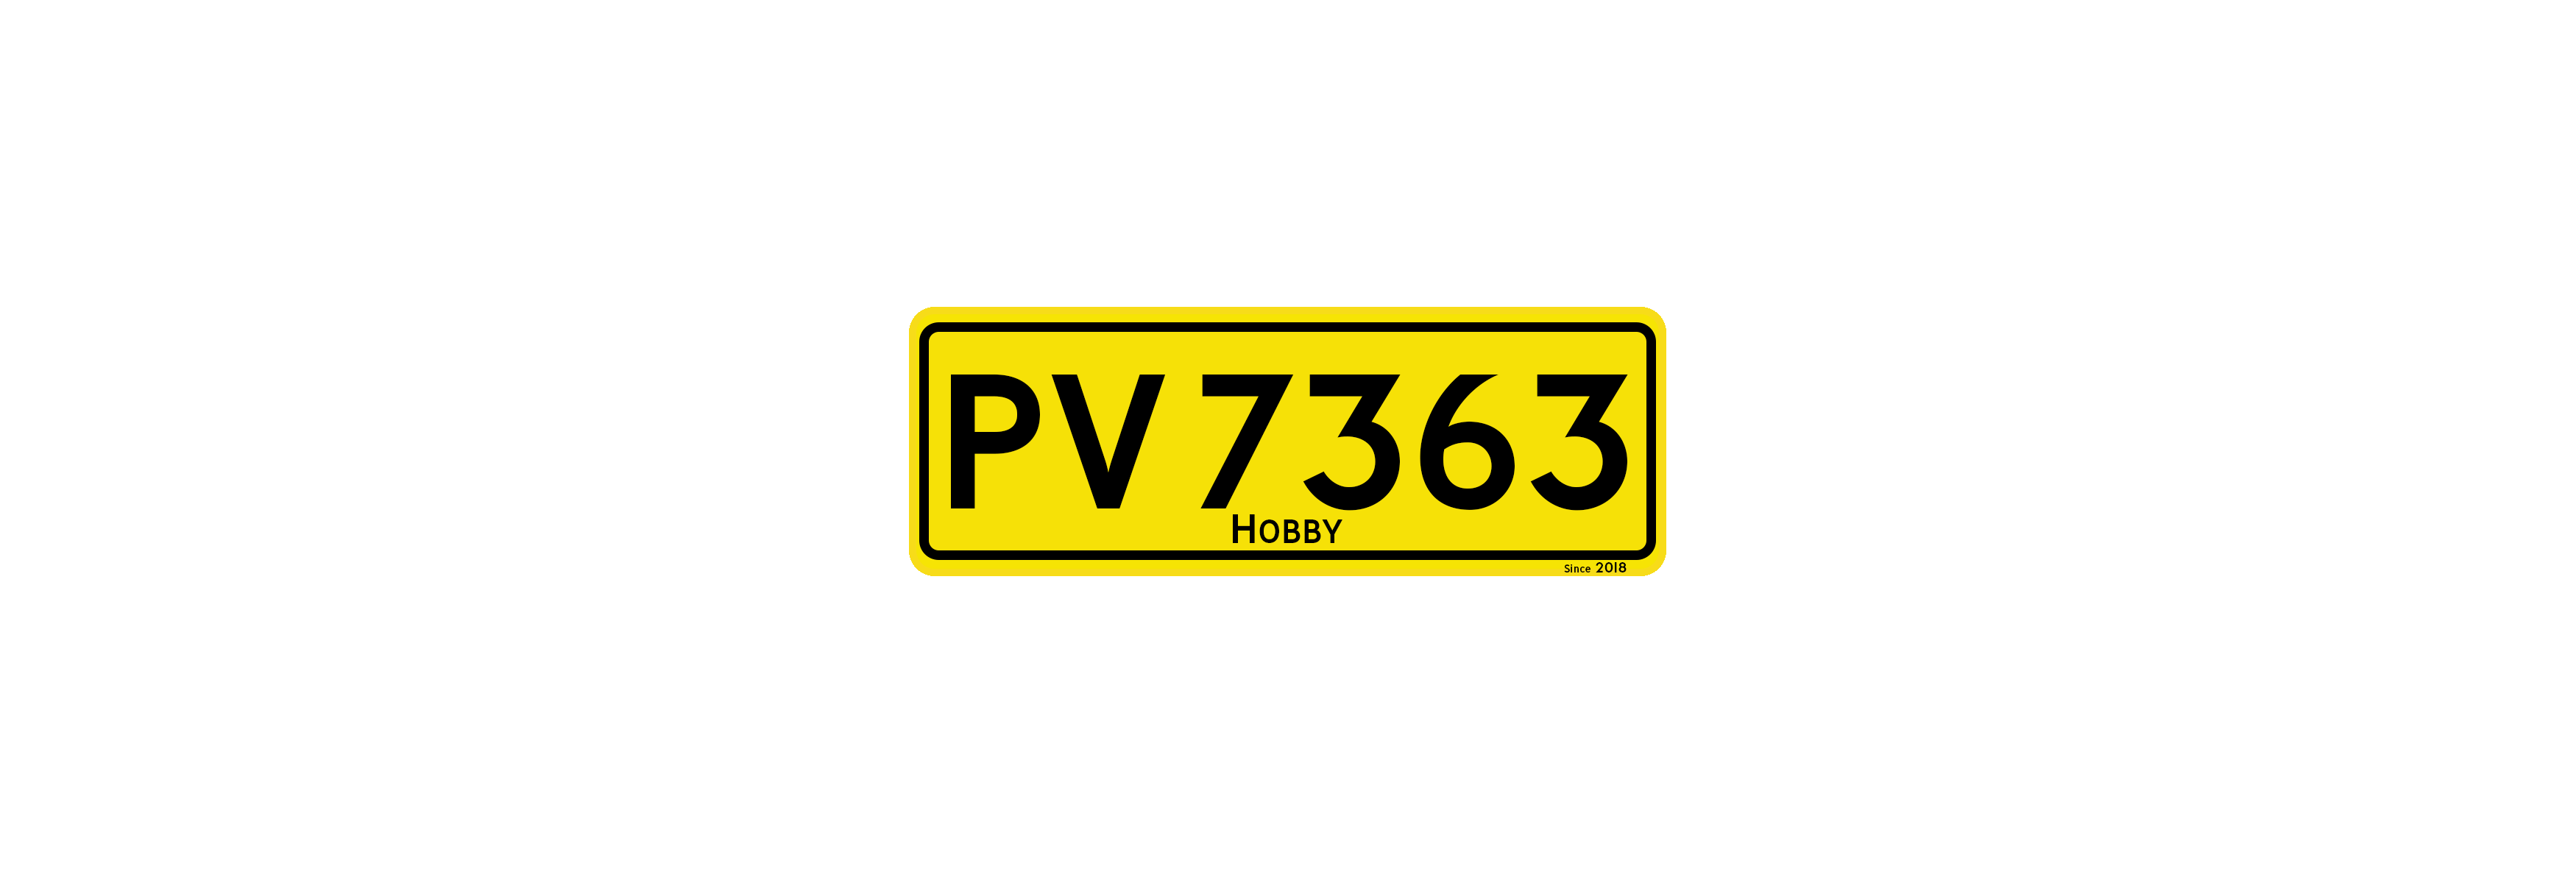 PV7363ホビー